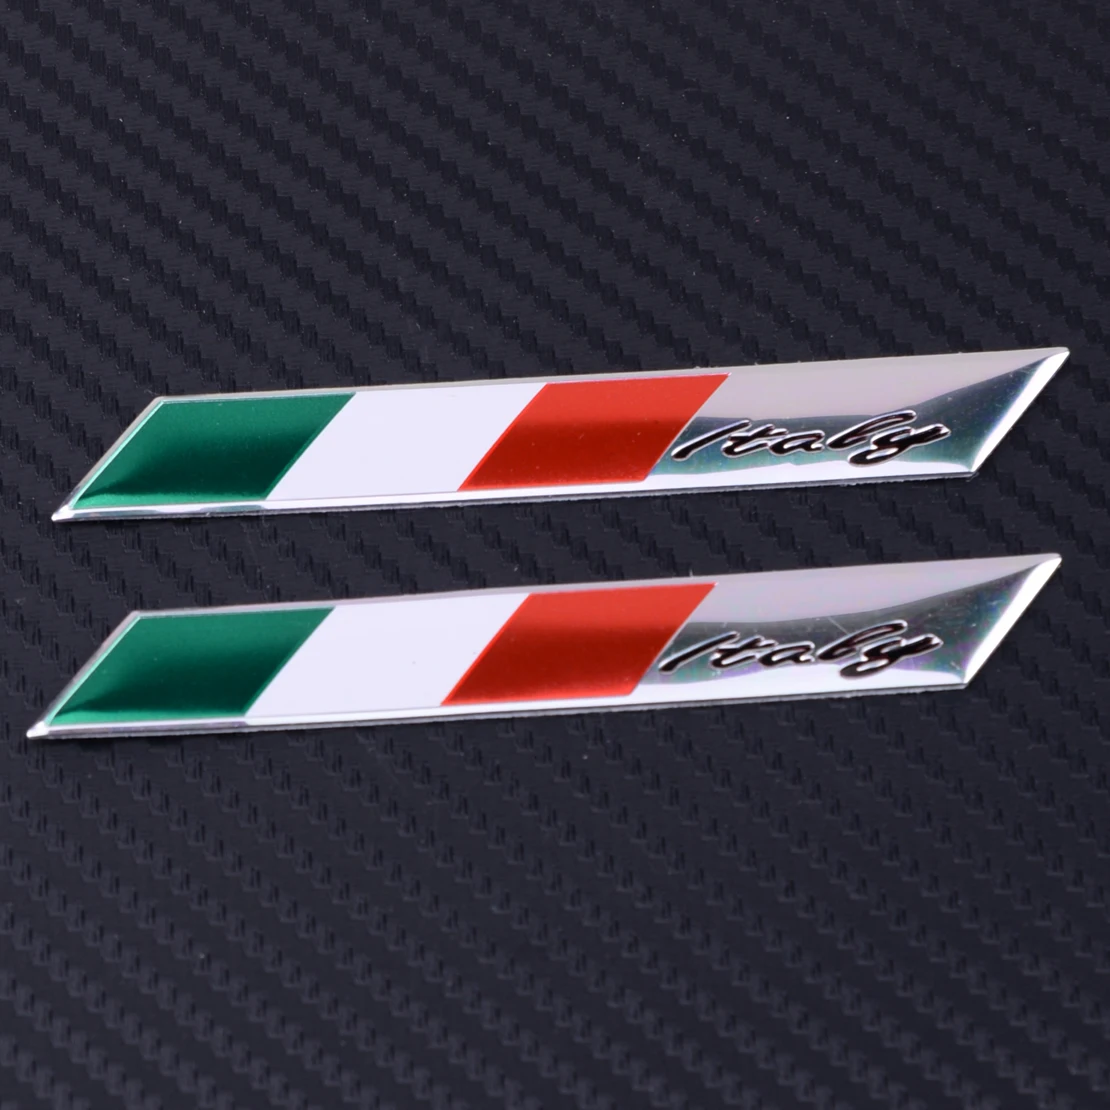 2Pcs Car Aluminum Decal Italy Italian Flag  Decor Sticker Emblem Badge Logo 3D 